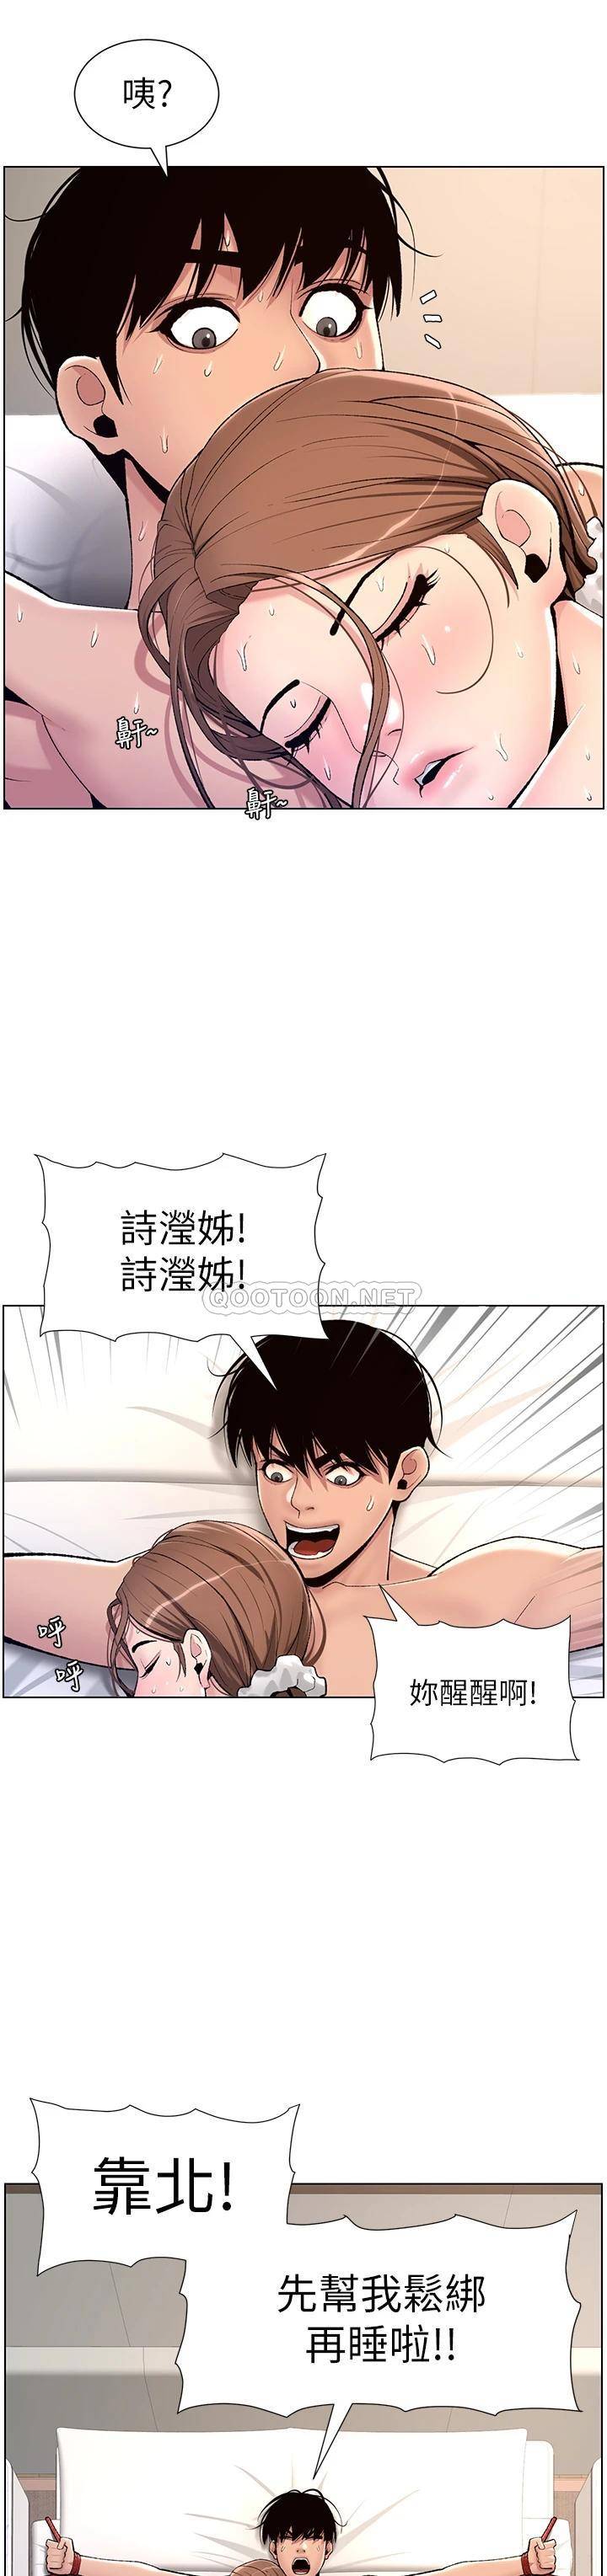 韩国污漫画 帝王App 第16话 你要当我的按摩棒吗? 34